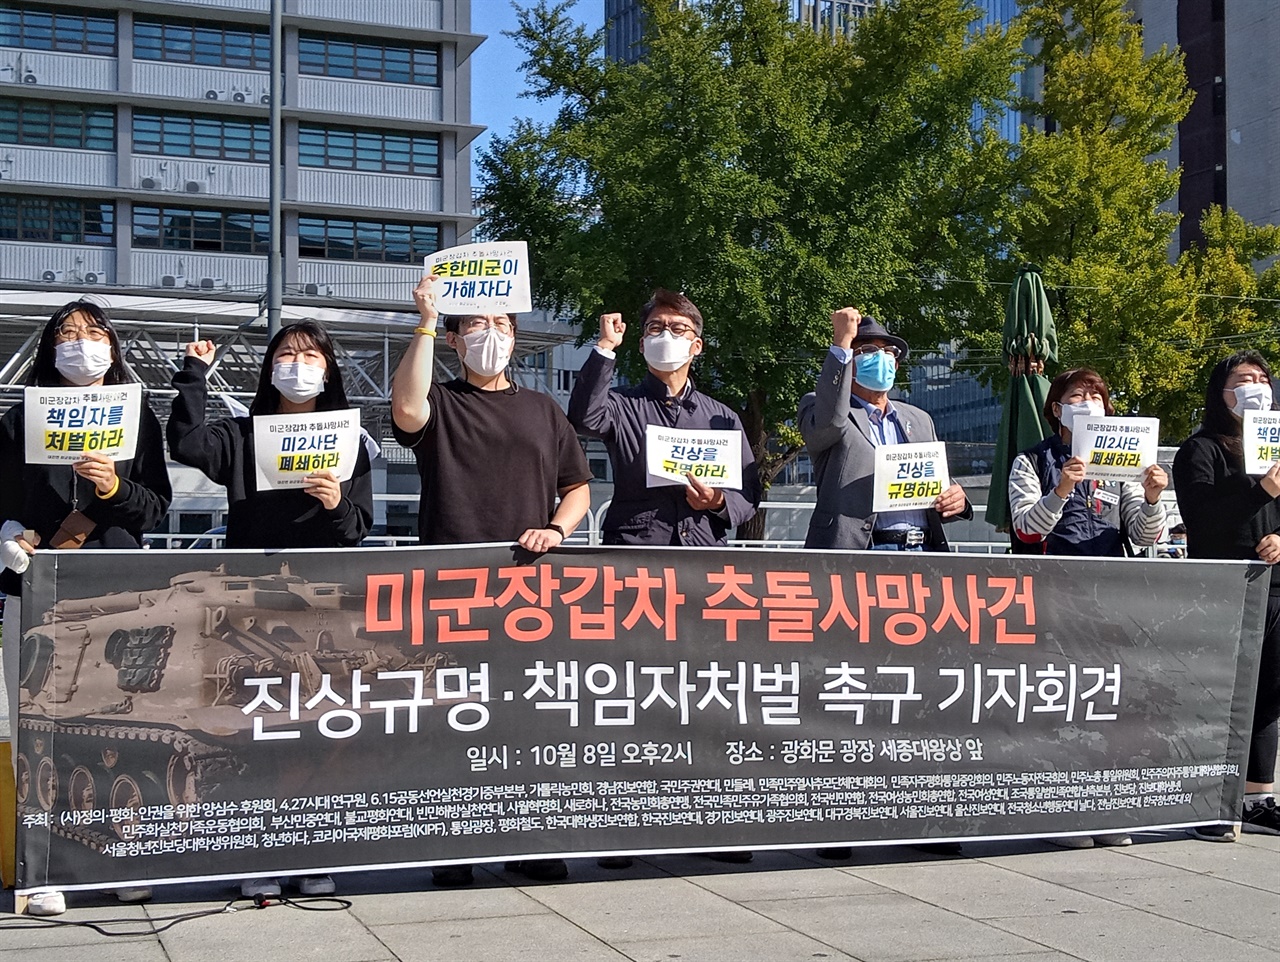 한국대학생진보연합 미군장갑차 추돌사망사건 진상규명단이 오늘 오후 2시 광화문 광장 세종대왕상 앞에서 '미군장갑차 추돌사망사건 진상규명·책임자처벌 촉구 공동기자회견'을 열었다.